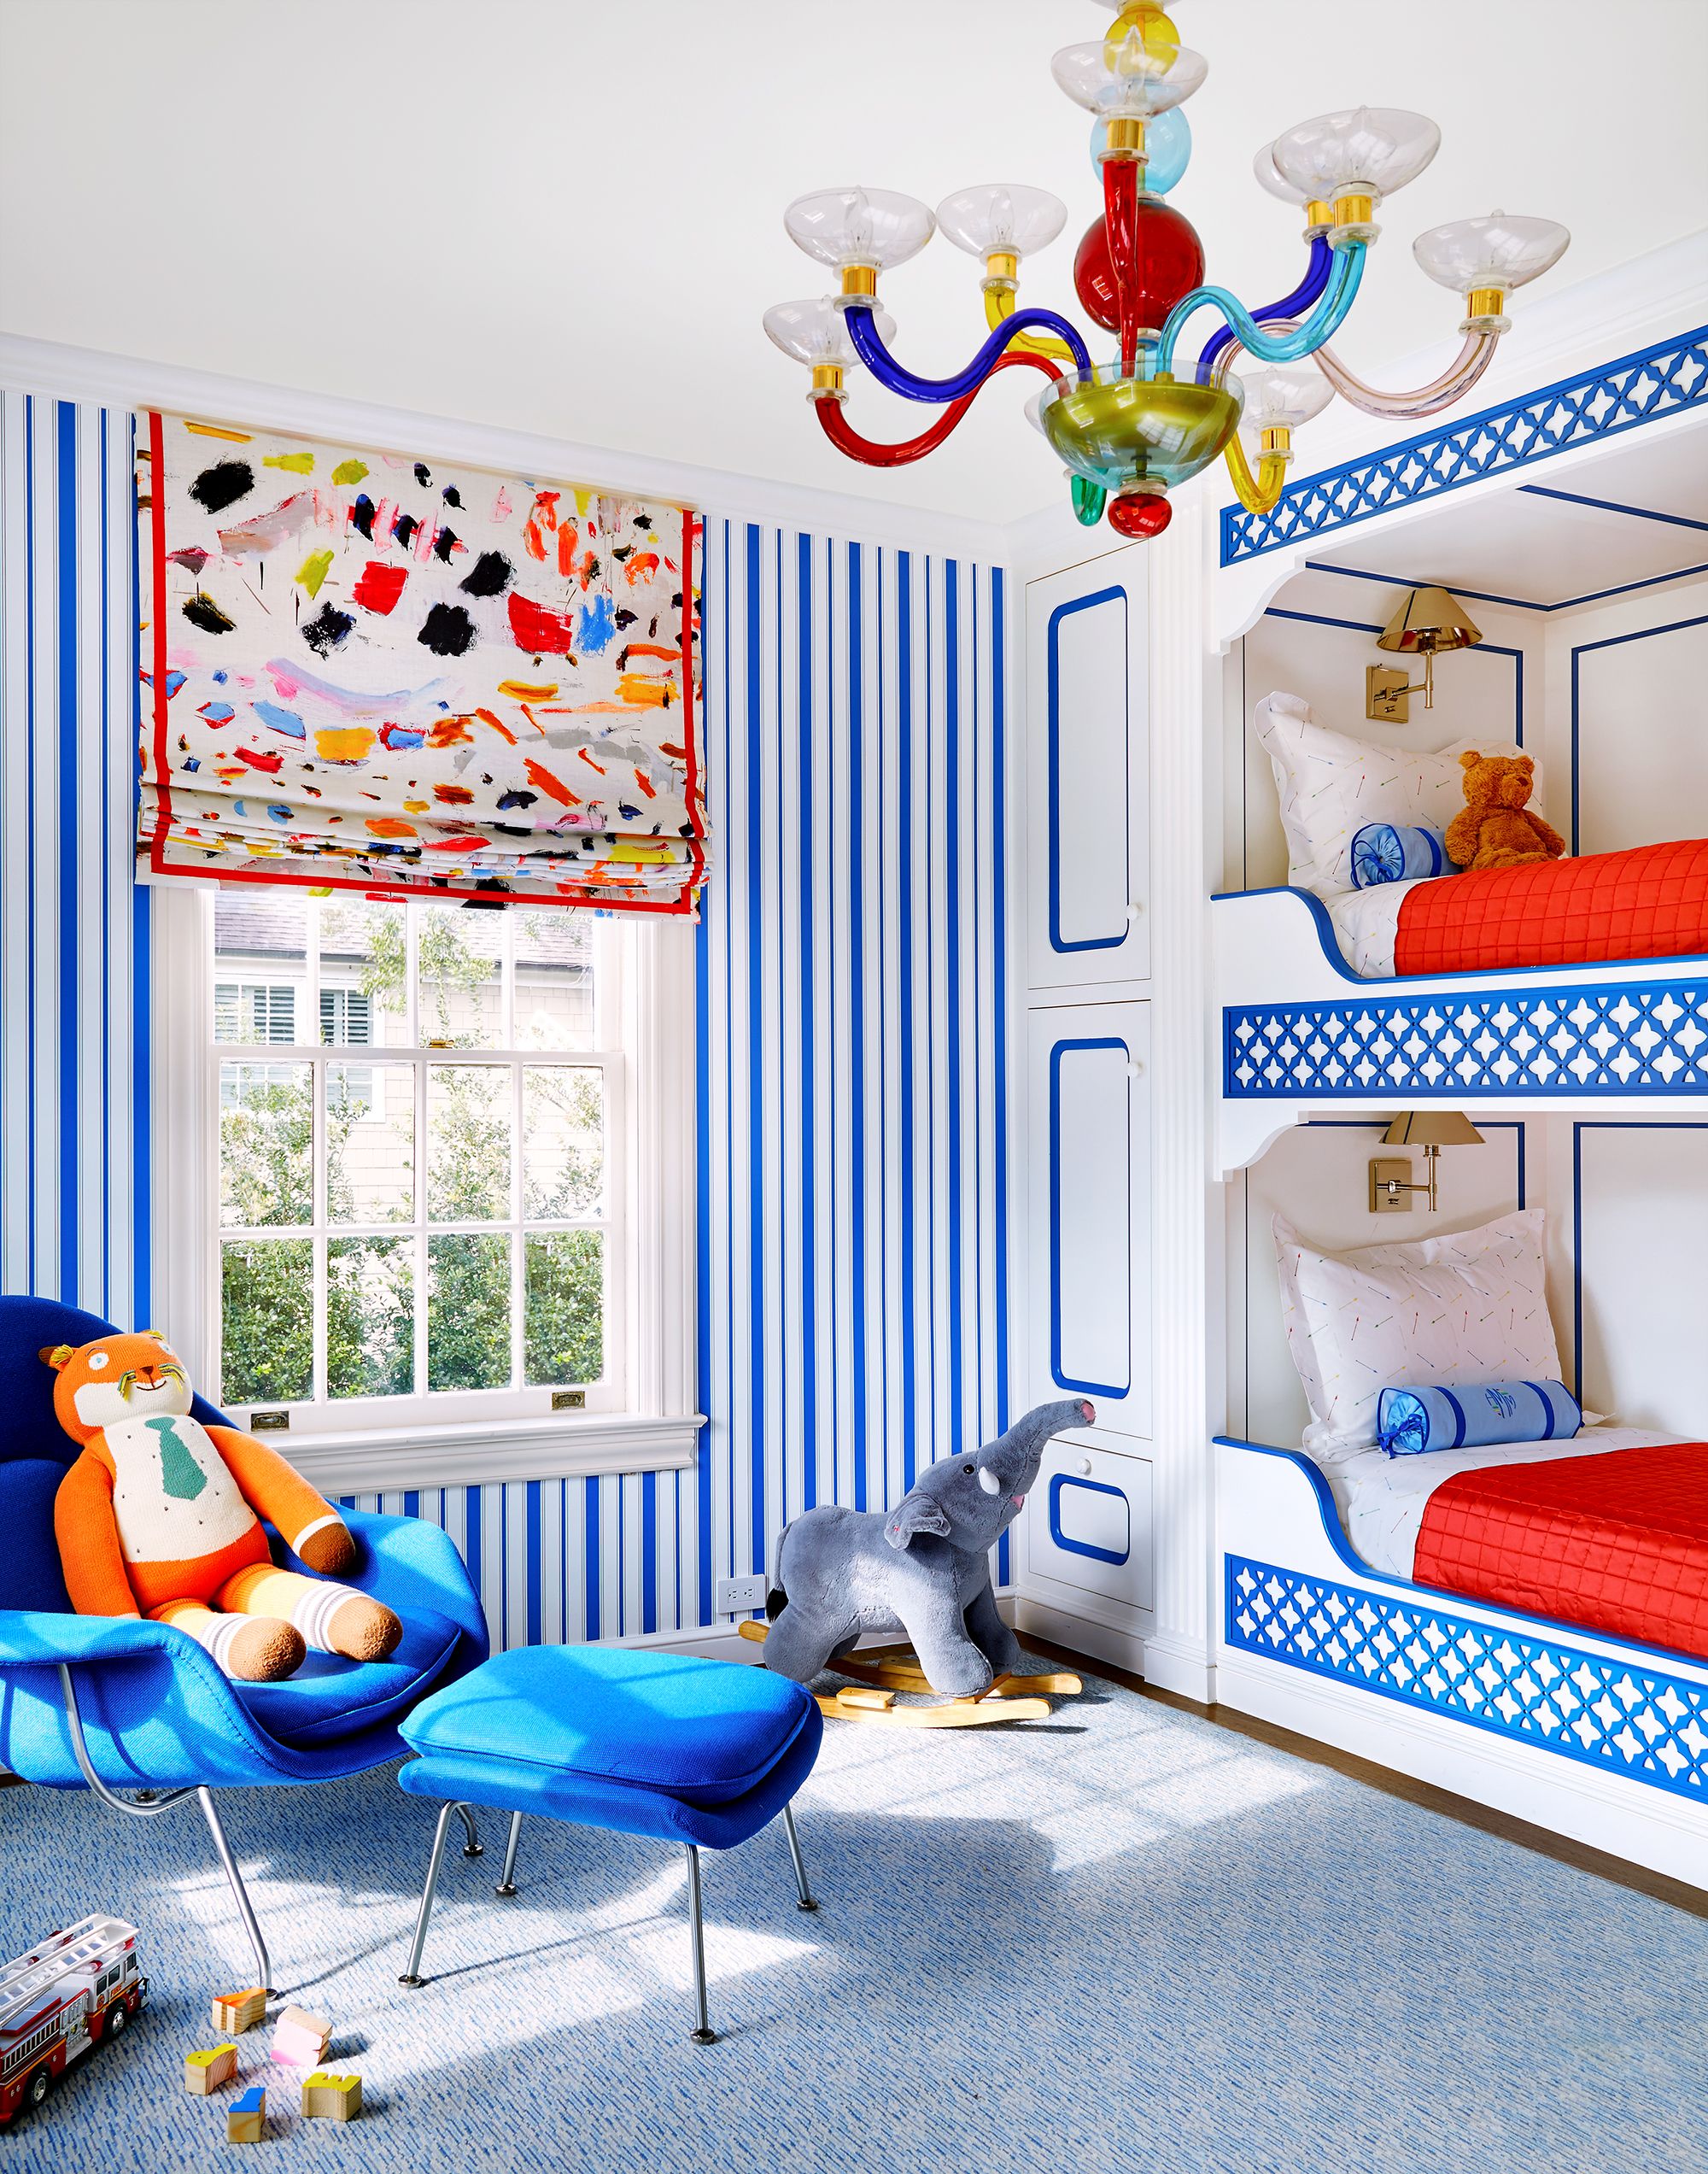 Diseño de habitaciones infantiles: crea un espacio alegre y funcional ...